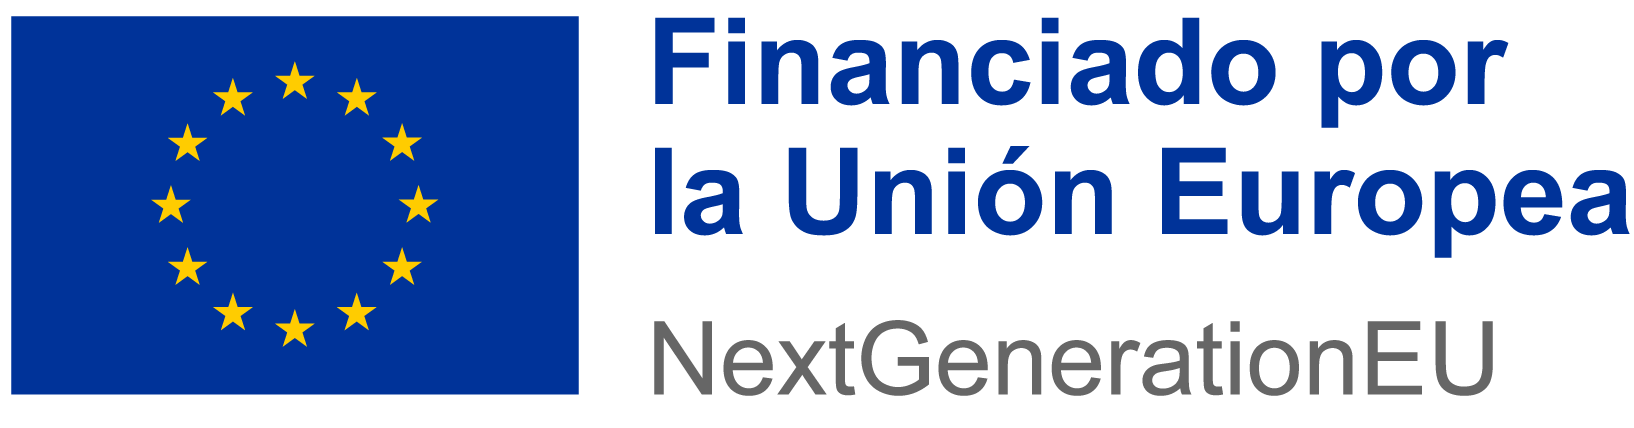 Logotipo NextGenerations EU